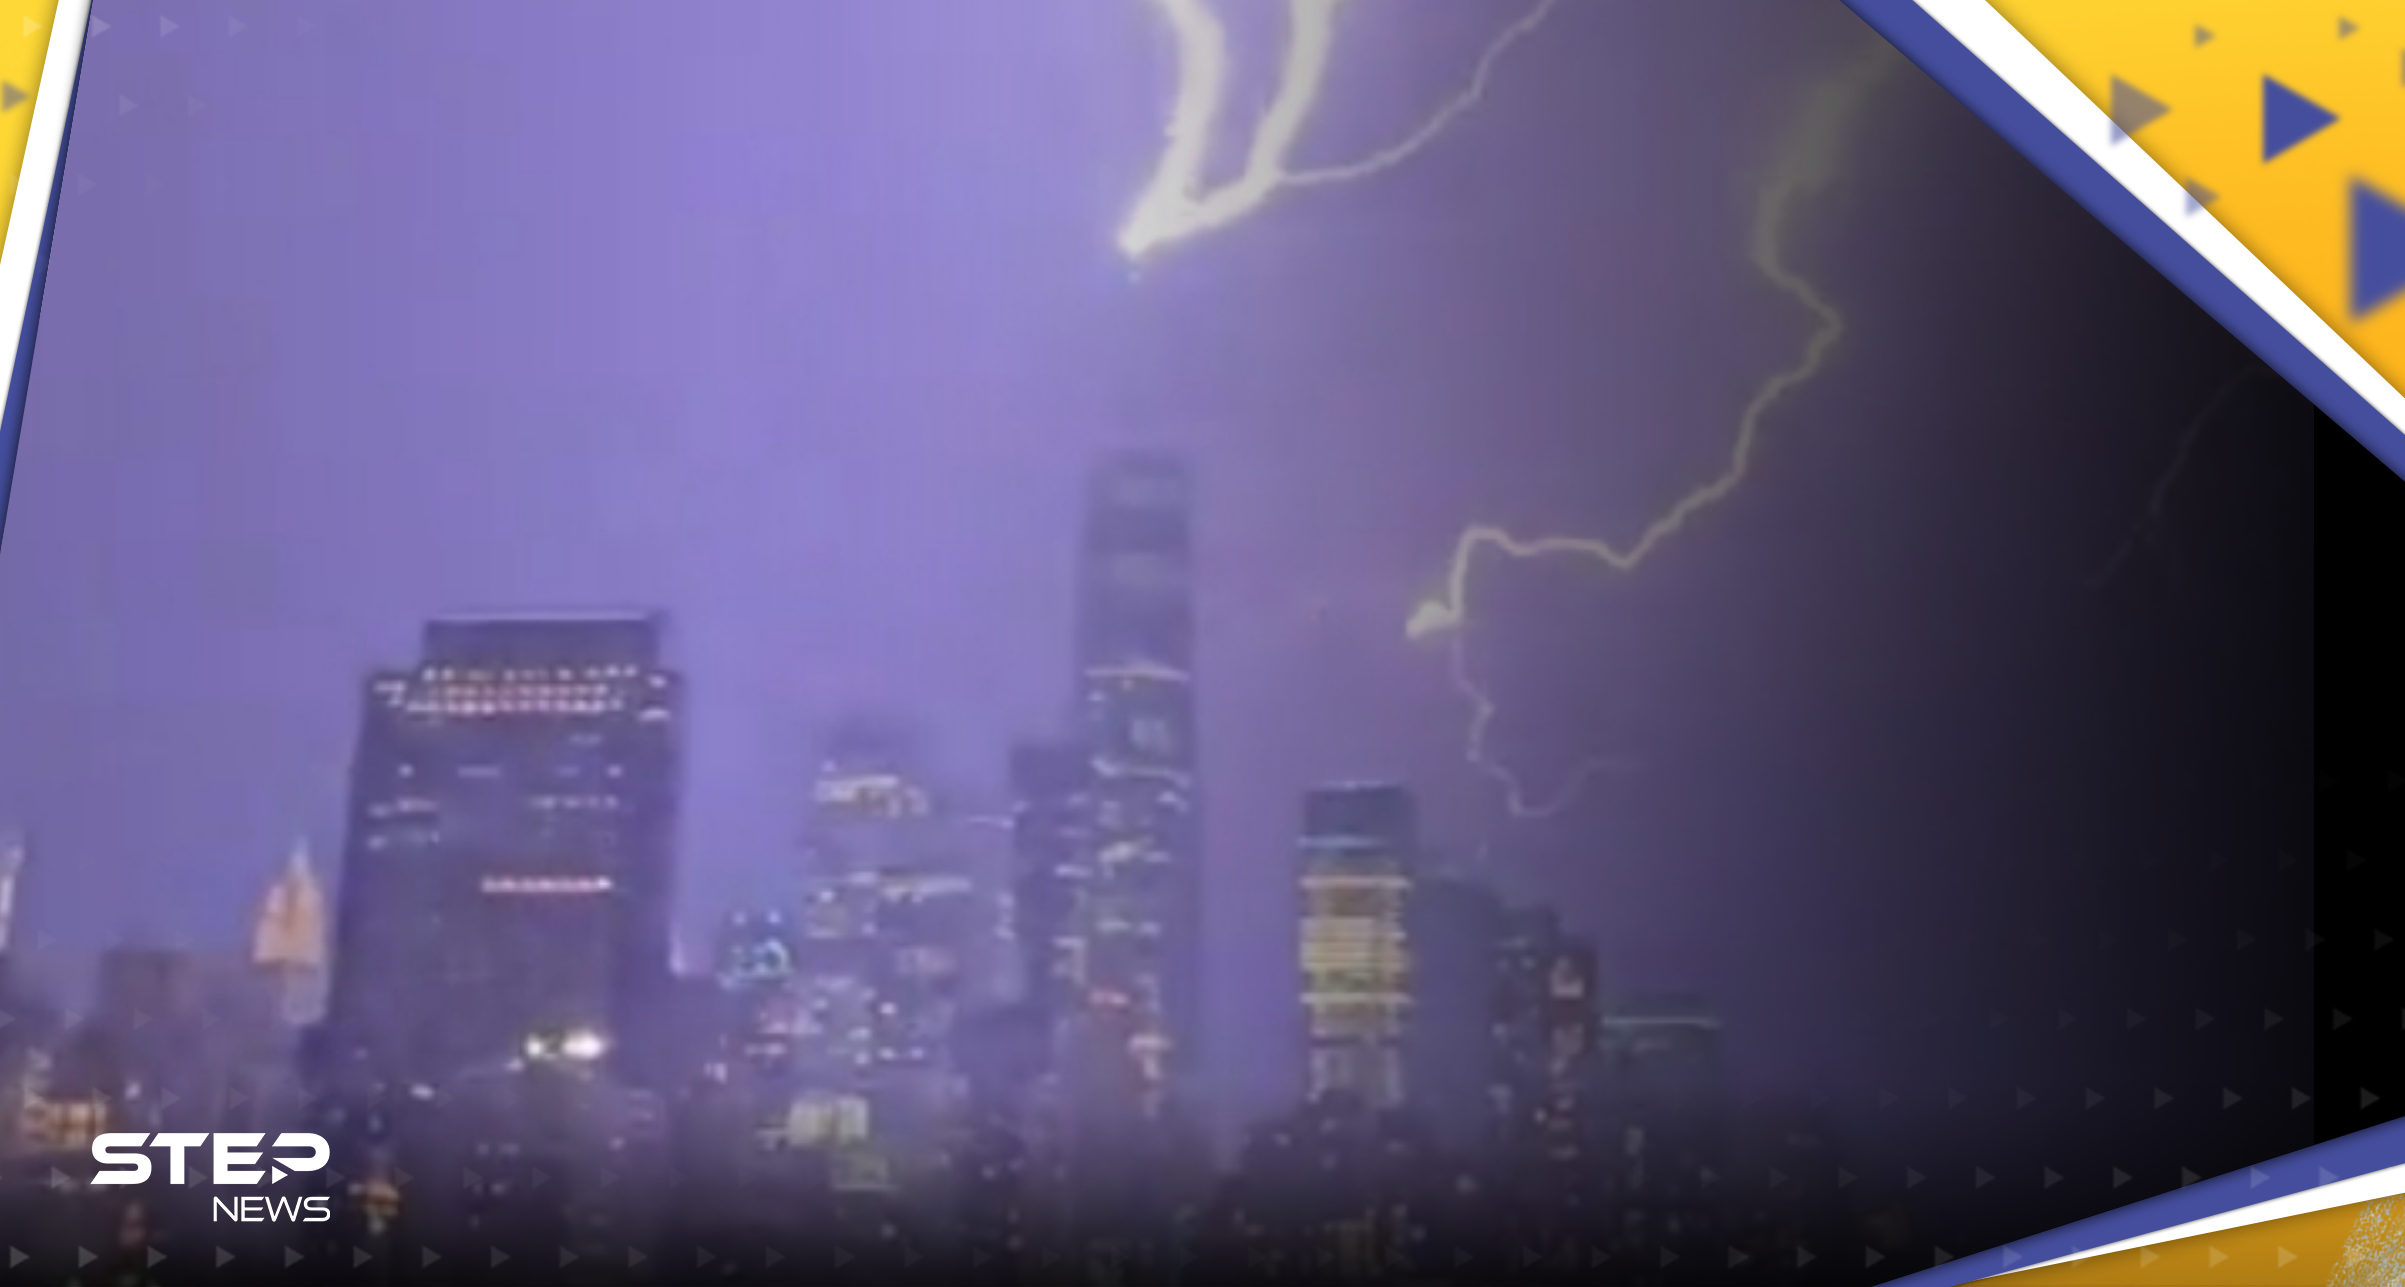 بالفيديو|| صاعقة تضرب برج التجارة في نيويورك وتحذير من "كارثة" أخرى قادمة بعد العاصفة "القوية"